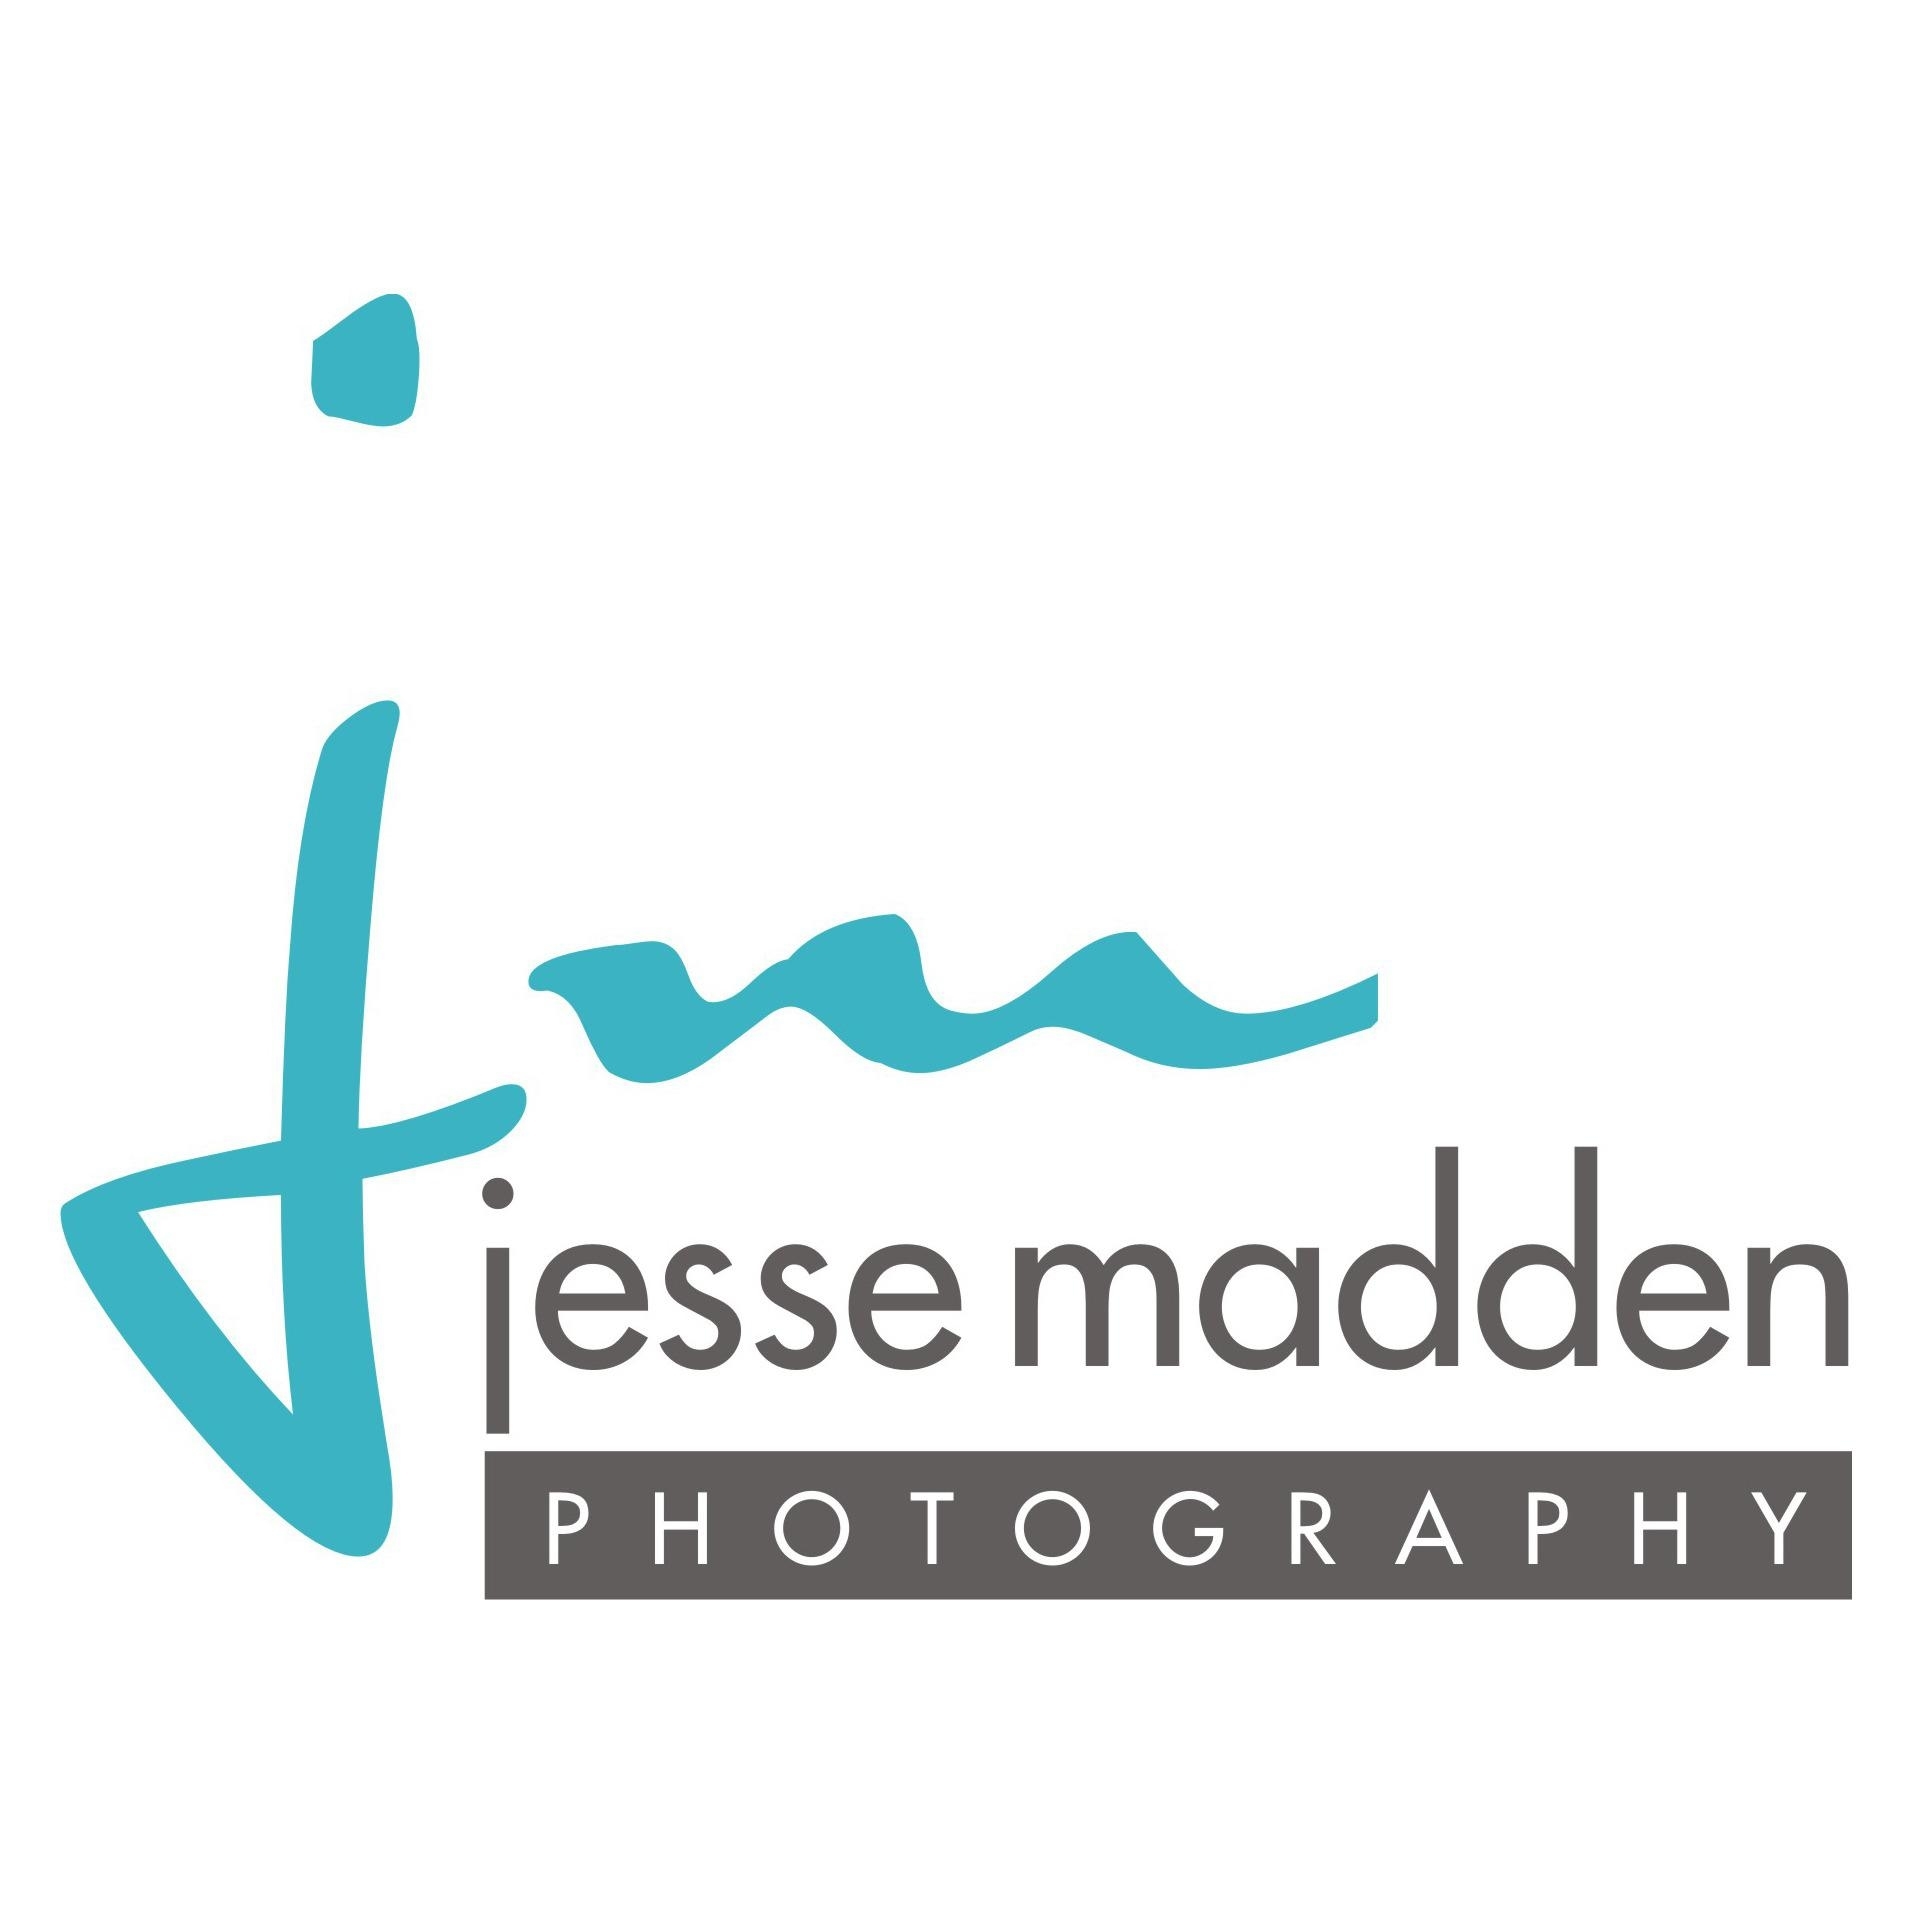 Jesse Madden Photography - Photographes commerciaux et industriels